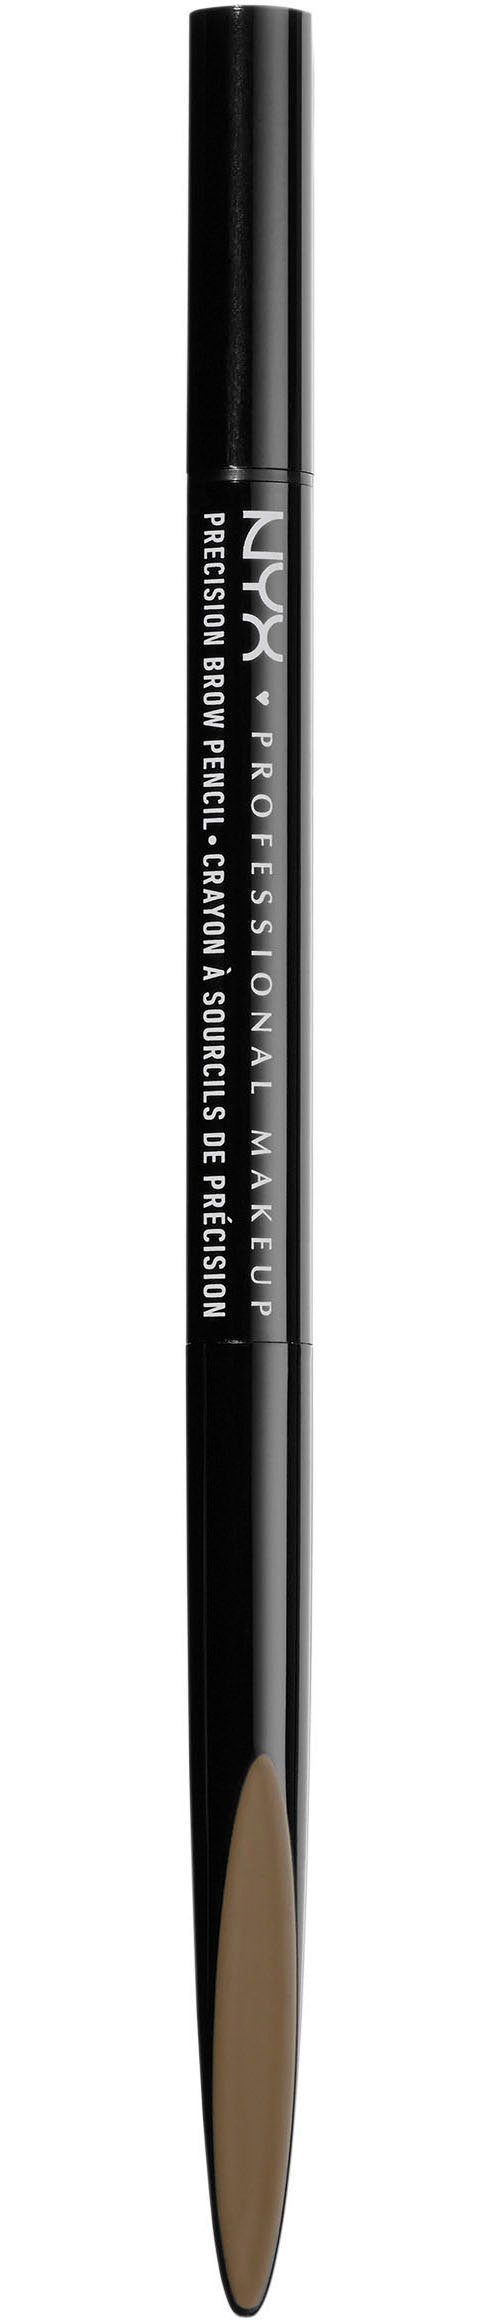 NYX Augenbrauen-Stift Professional espresso Precision Pencil Makeup Brow